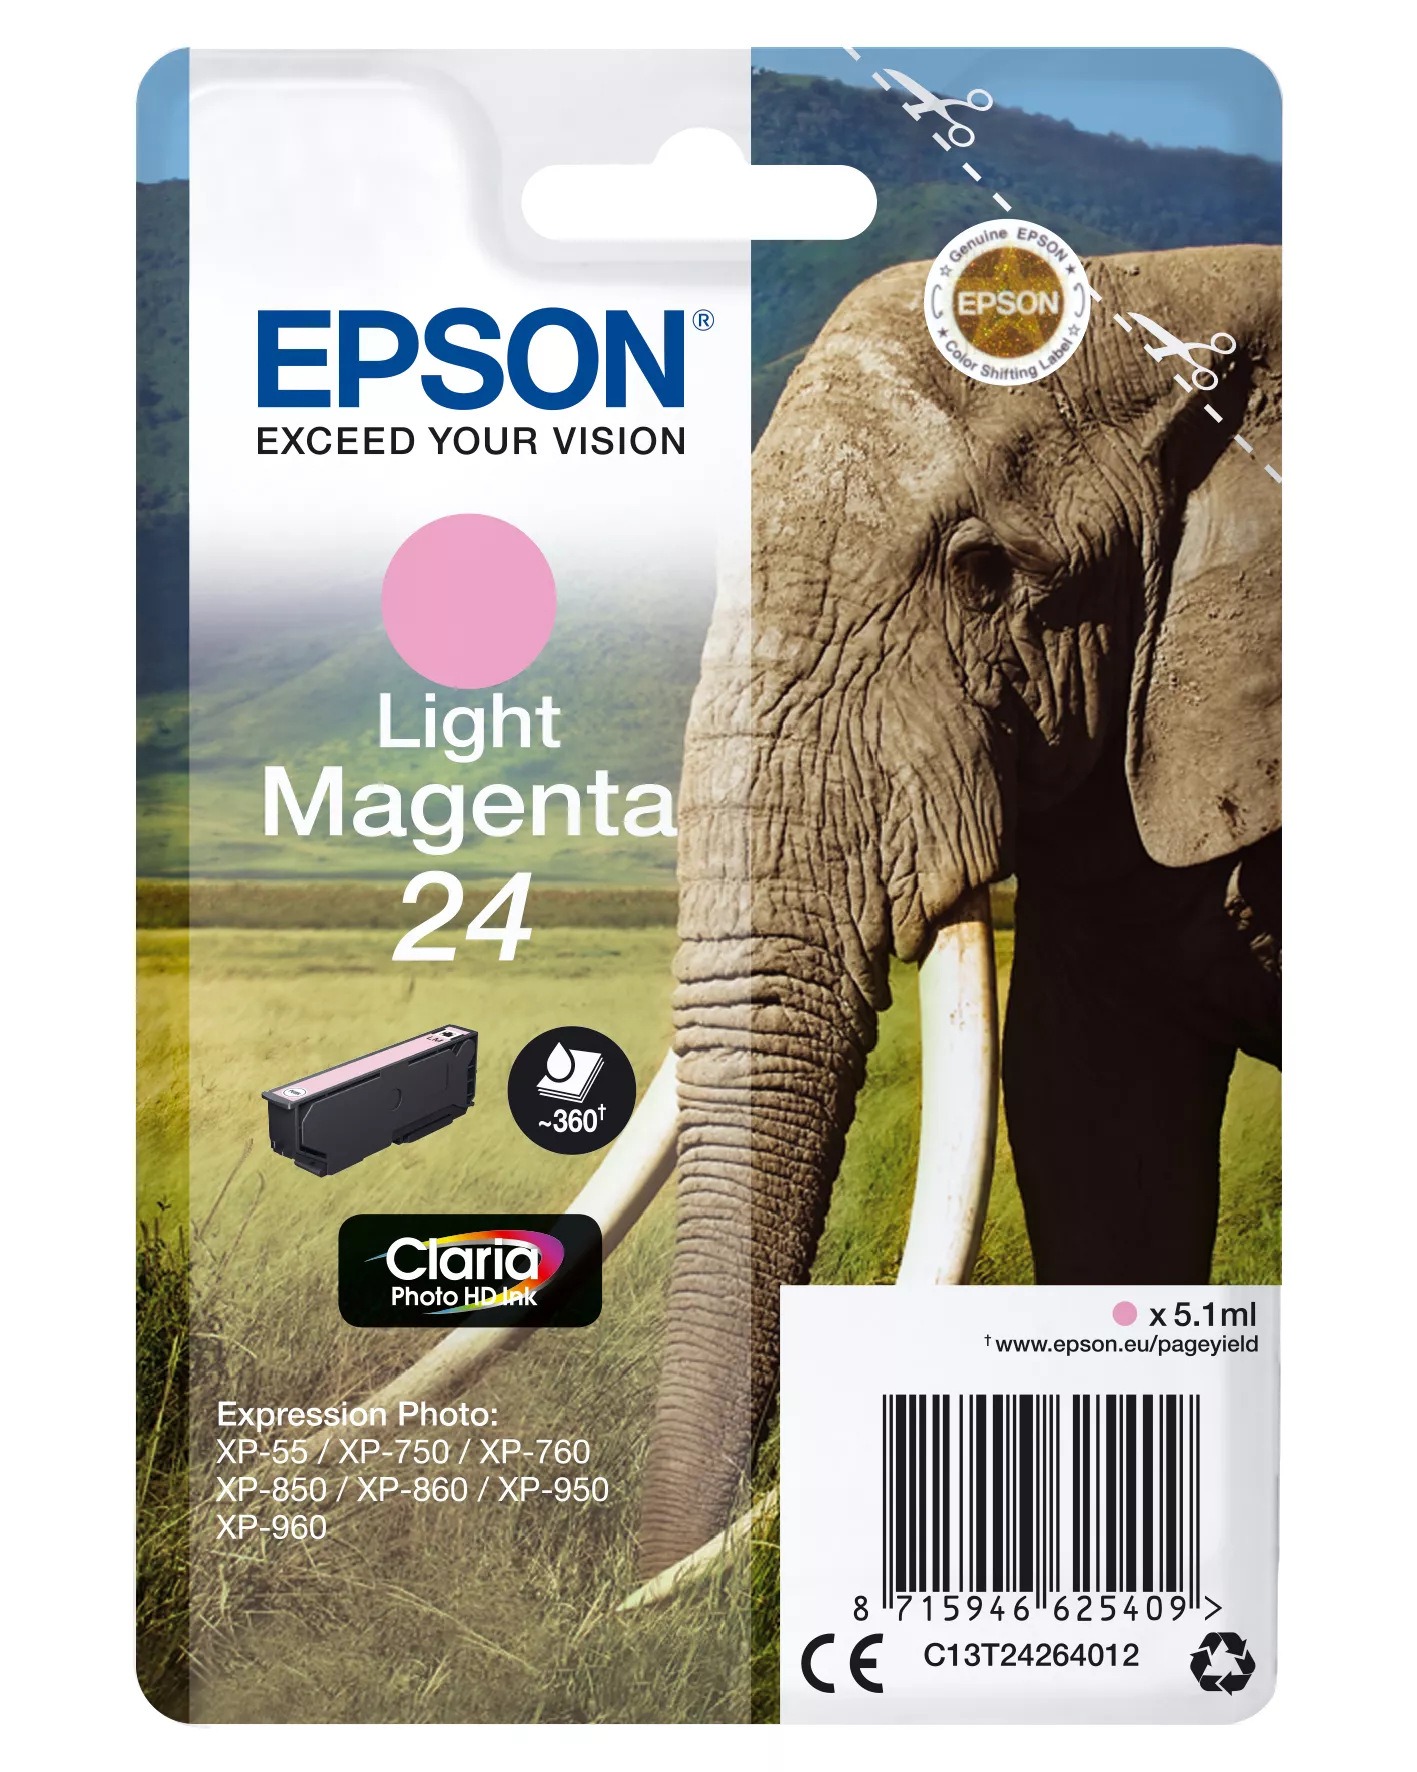 Achat EPSON 24 cartouche d encre magenta clair capacité standard au meilleur prix